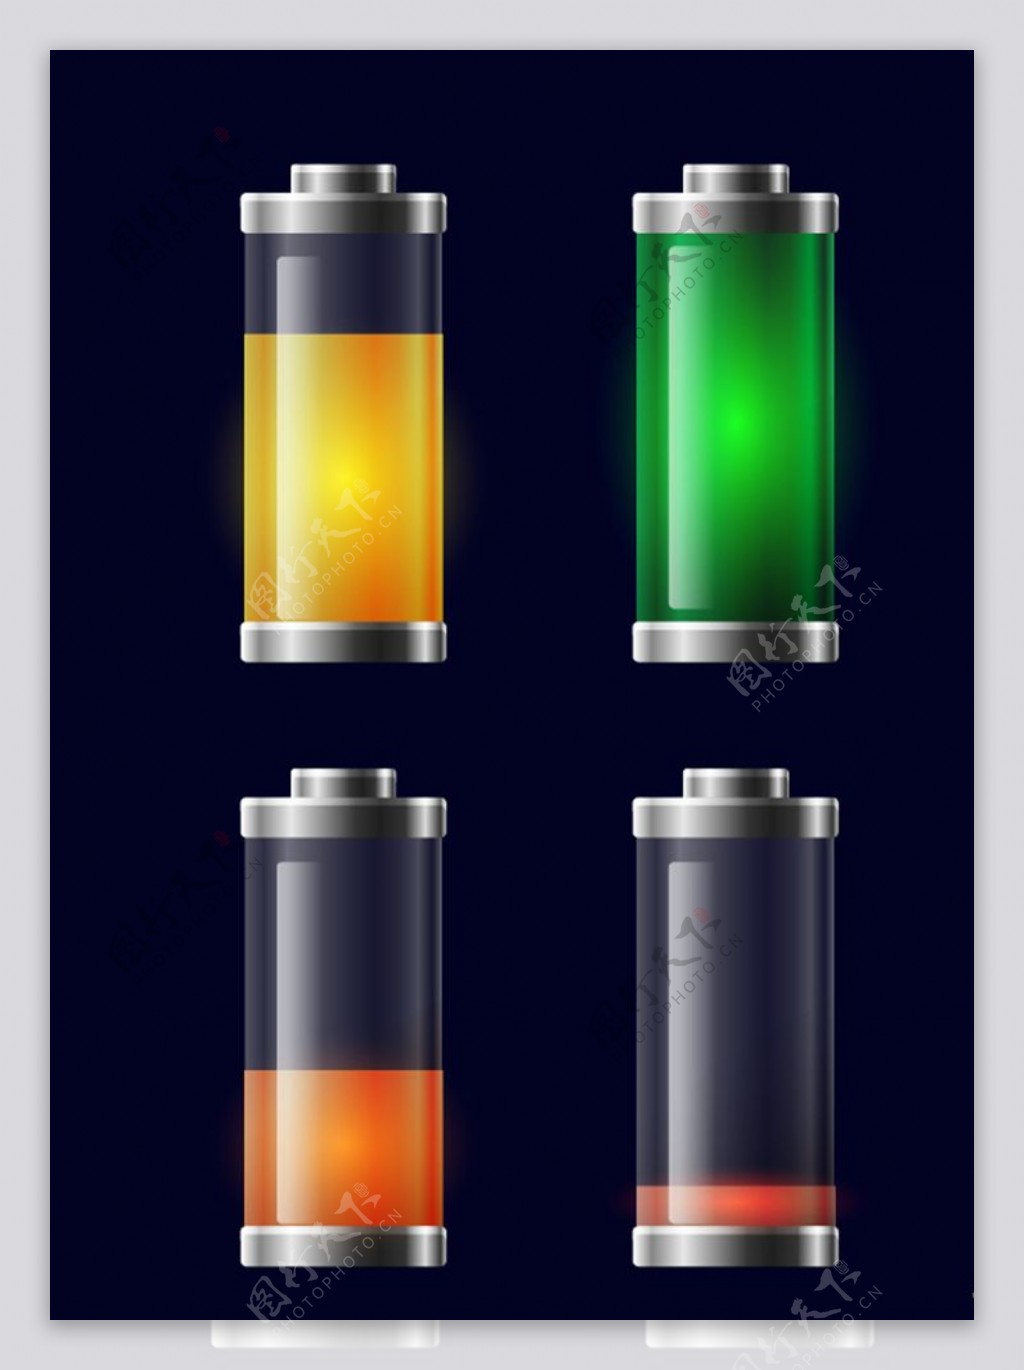 不同颜色的透明充电电池矢量素材